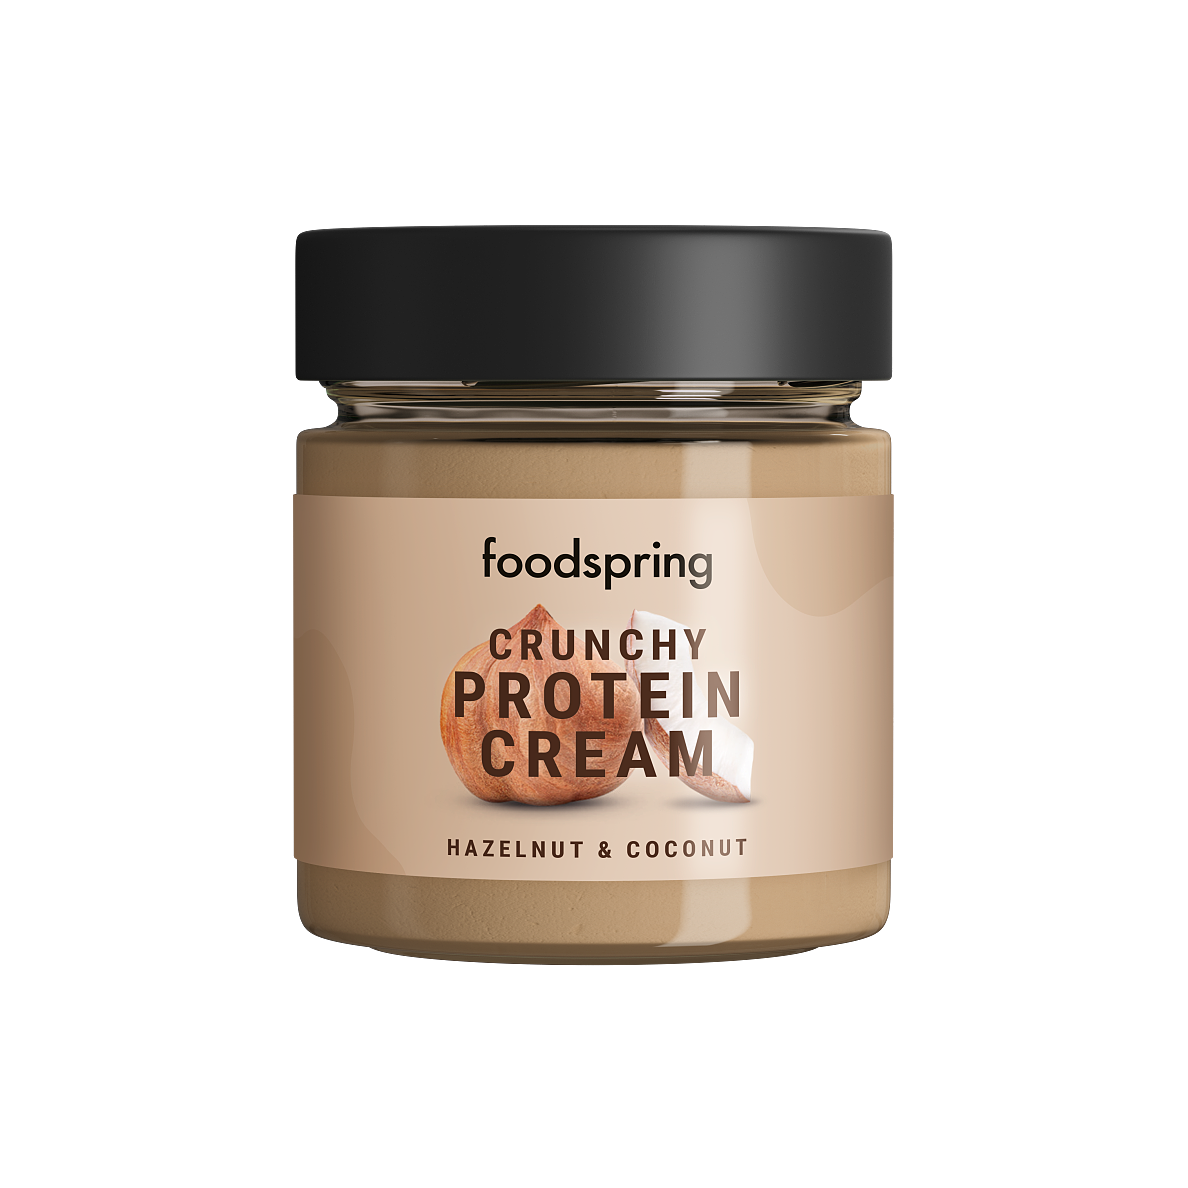 foodspring_Crunchy Protein Cream_Haselnuss und Kokosnuss_EUR 5,99_01